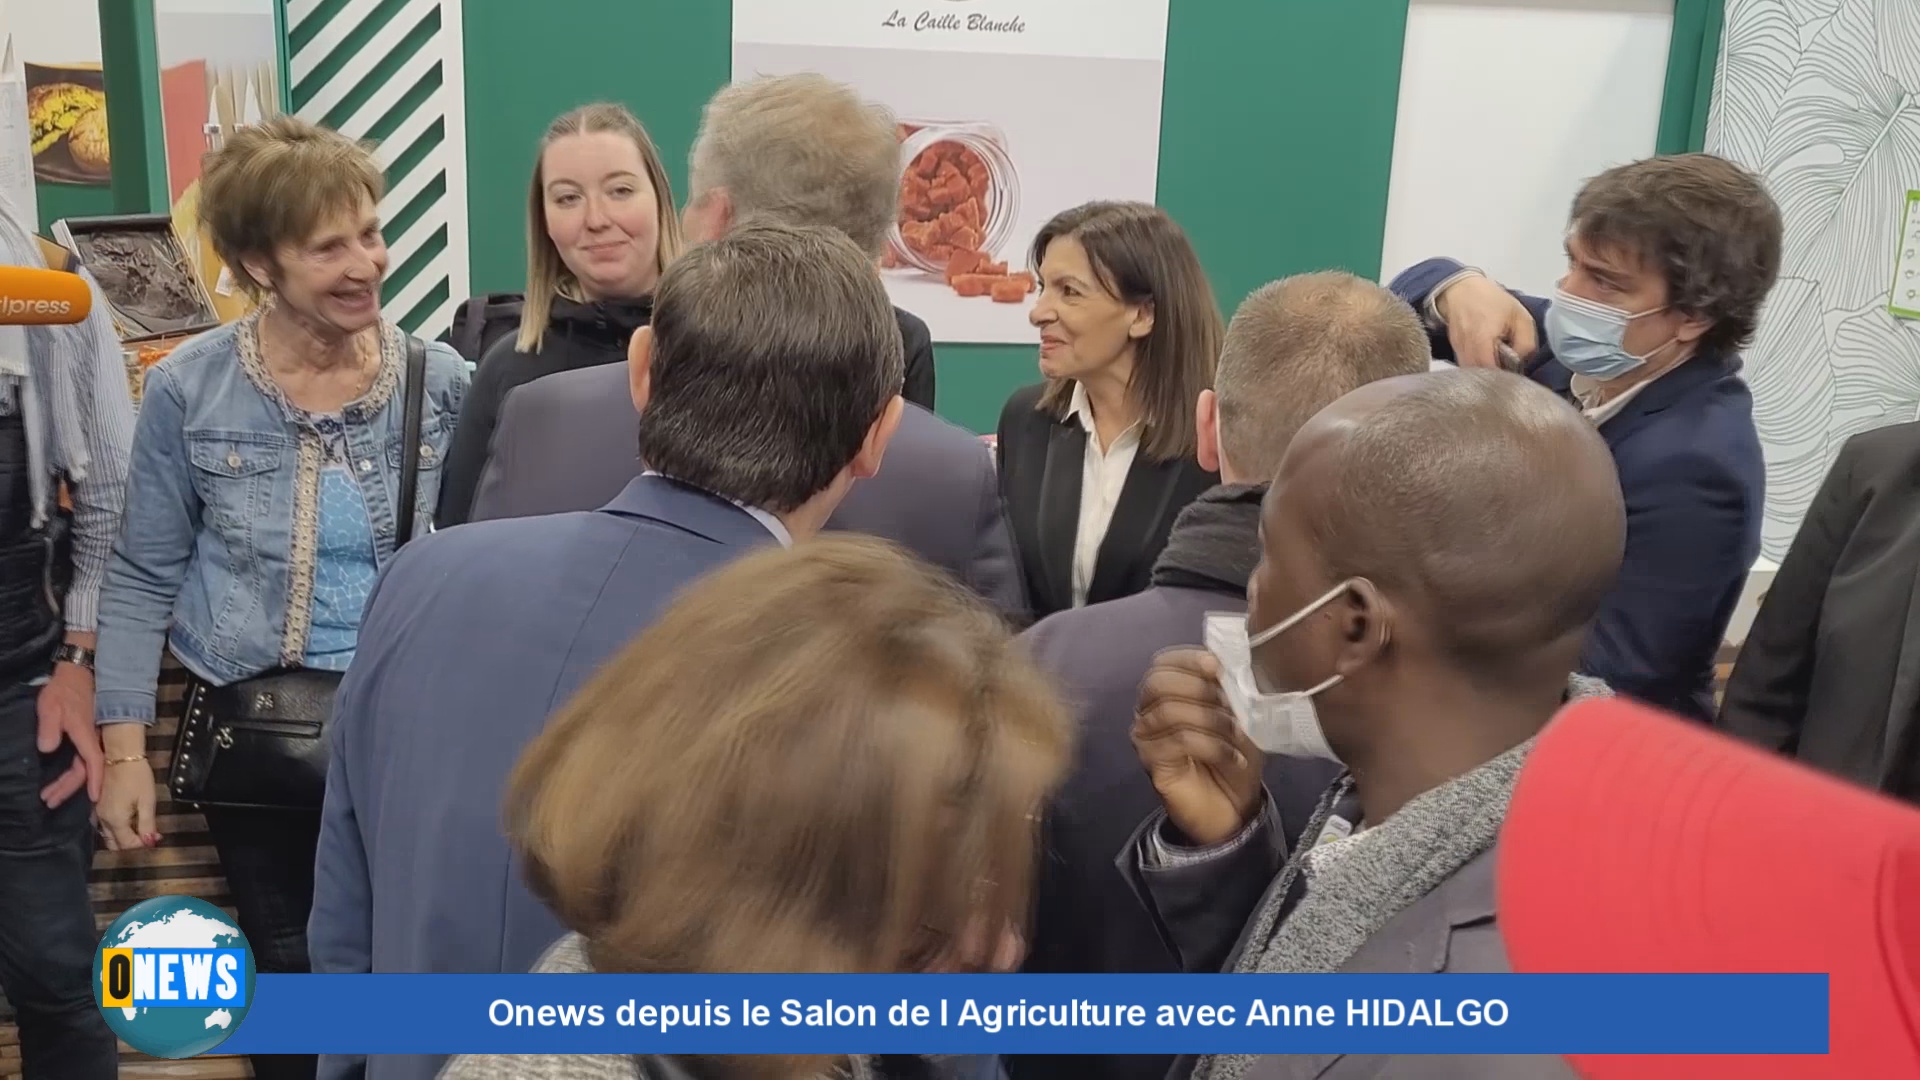 [Vidéo] Onews depuis le Salon de l Agriculture avec Anne HIDALGO sur les stands Outre mer